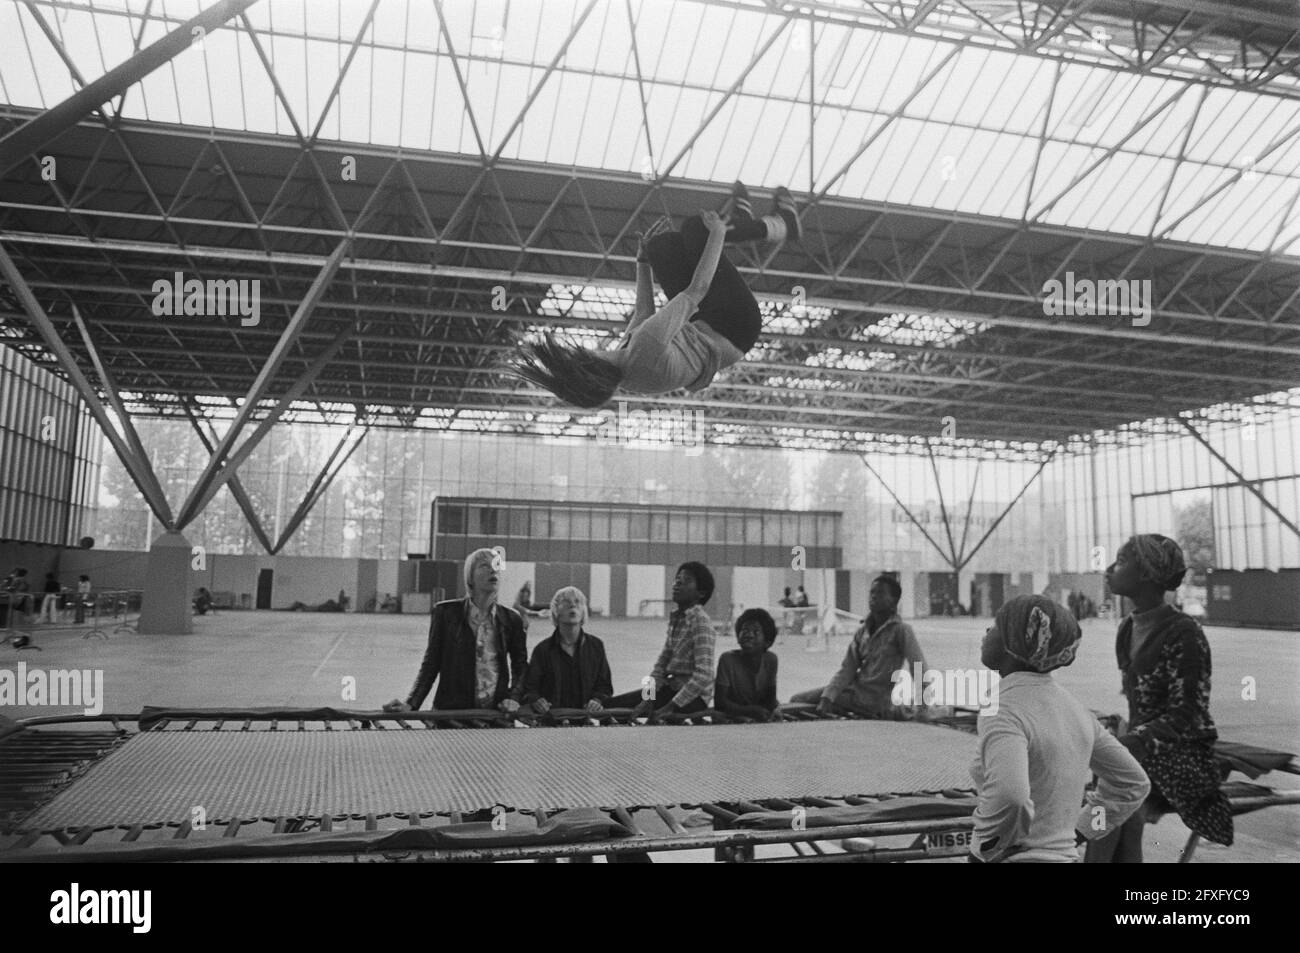 Jumping trampoline Imágenes de stock en blanco y negro - Página 2 - Alamy